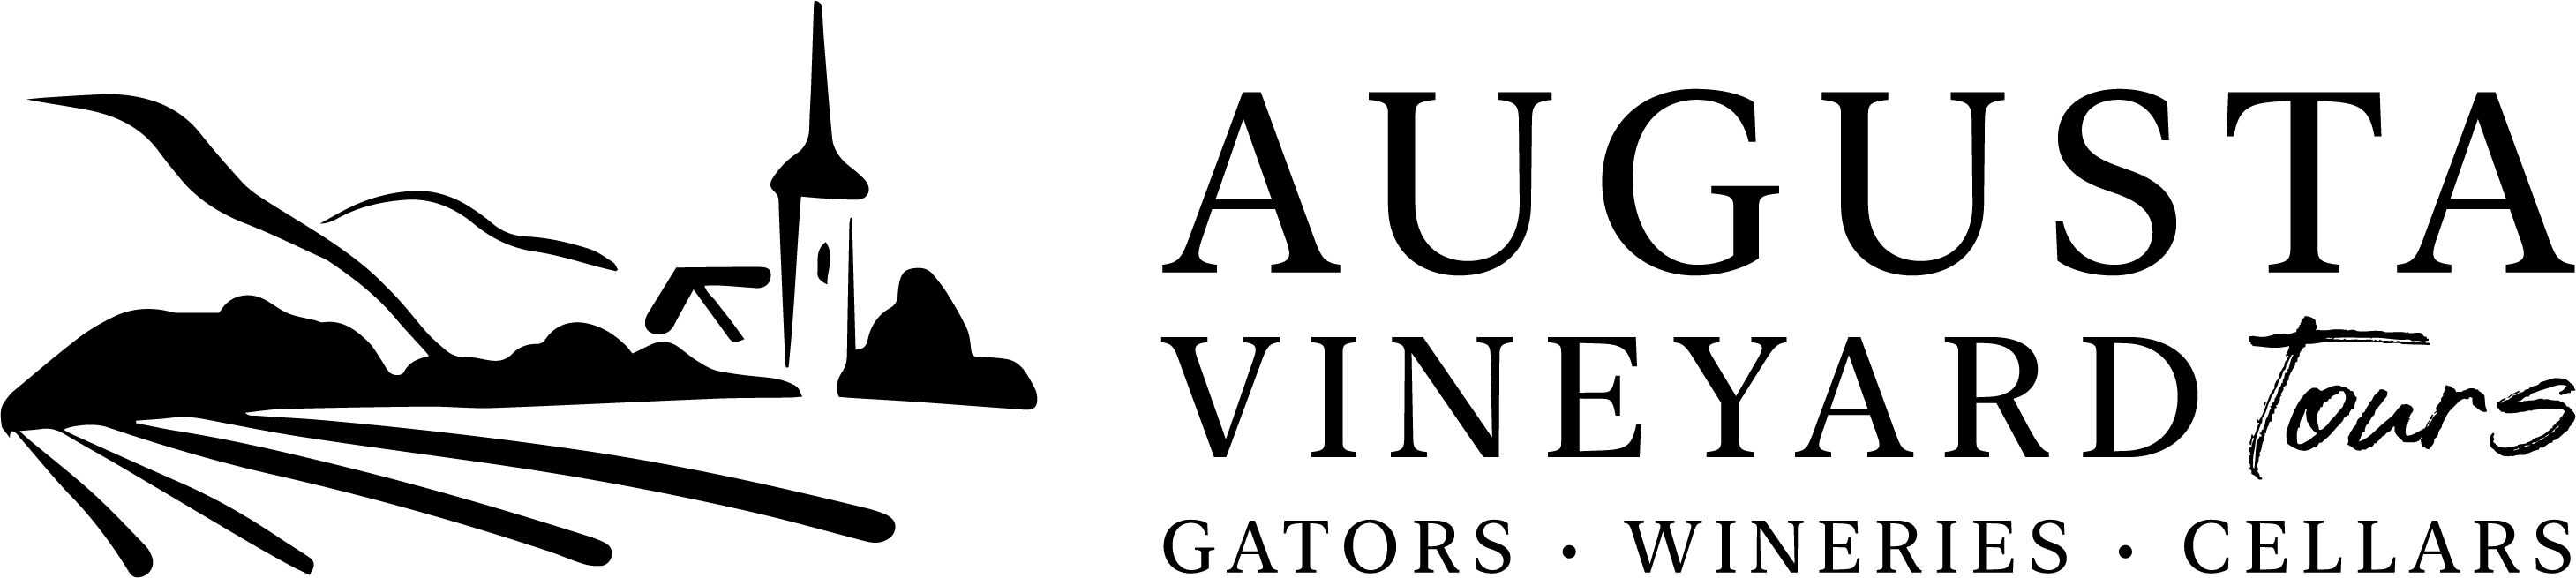 Augusta Vineyard Tours Logo